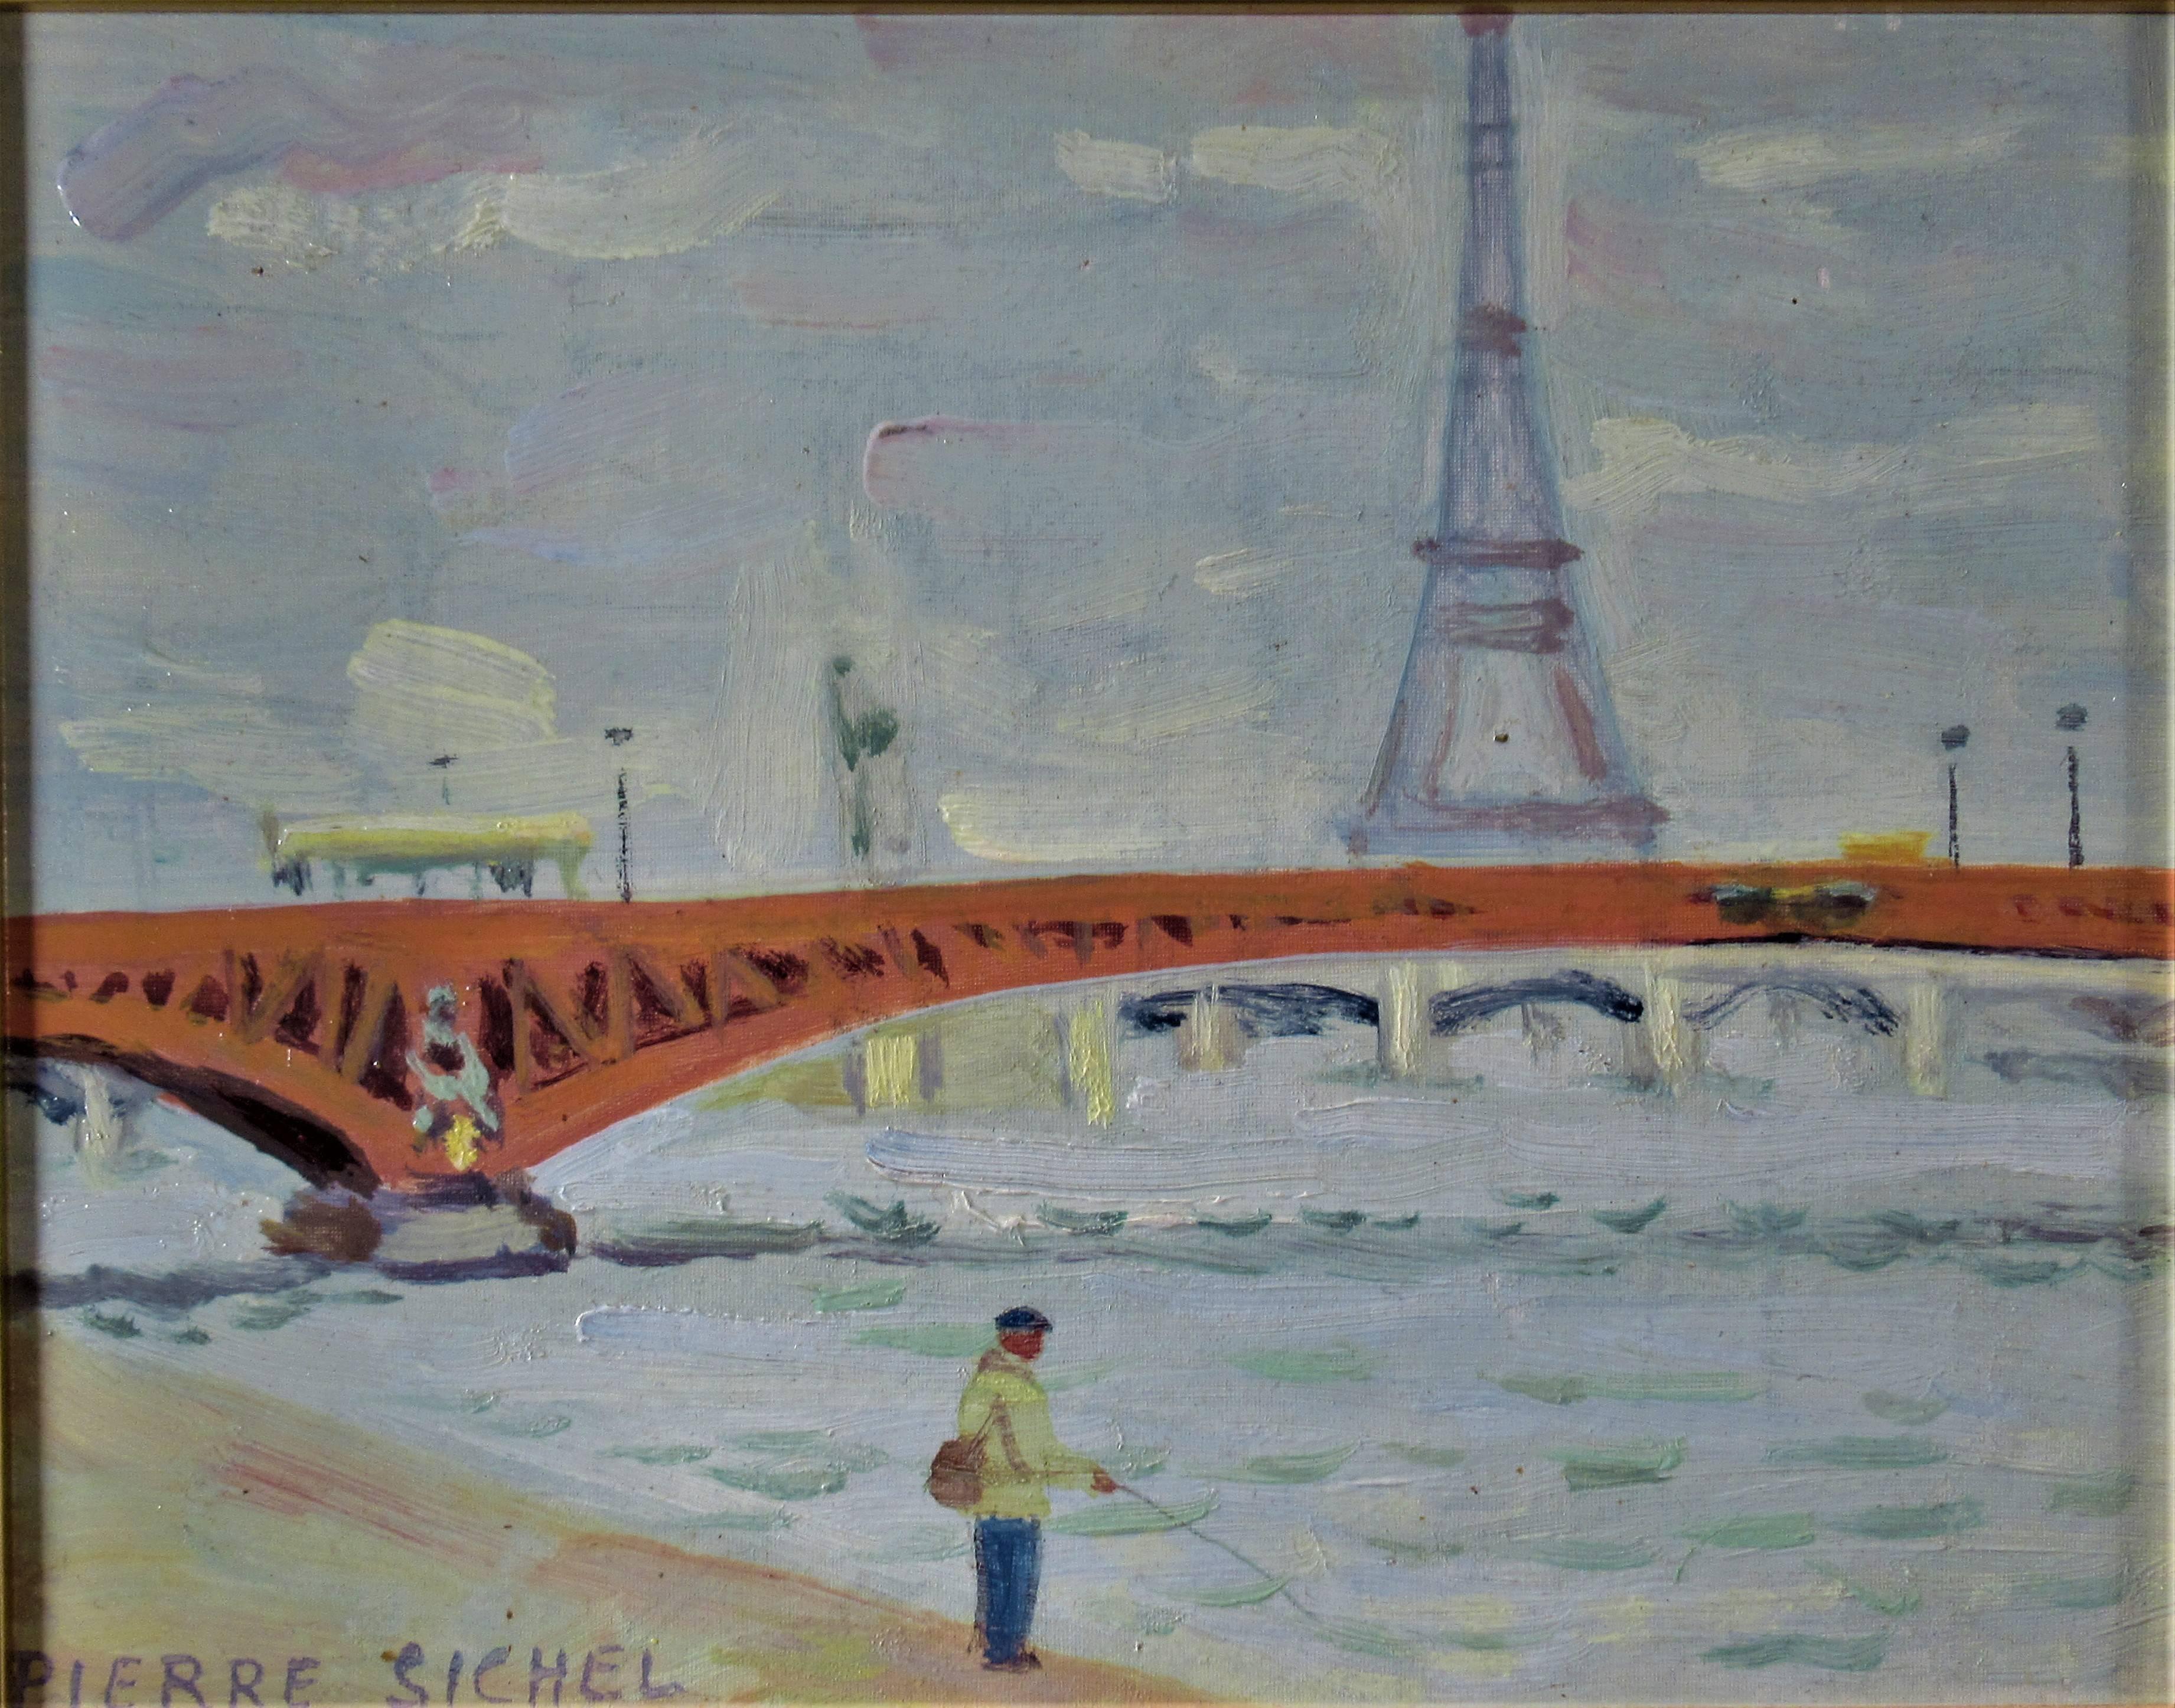 La Tour Eiffel, Vue de Paris - Painting by Pierre Sichel